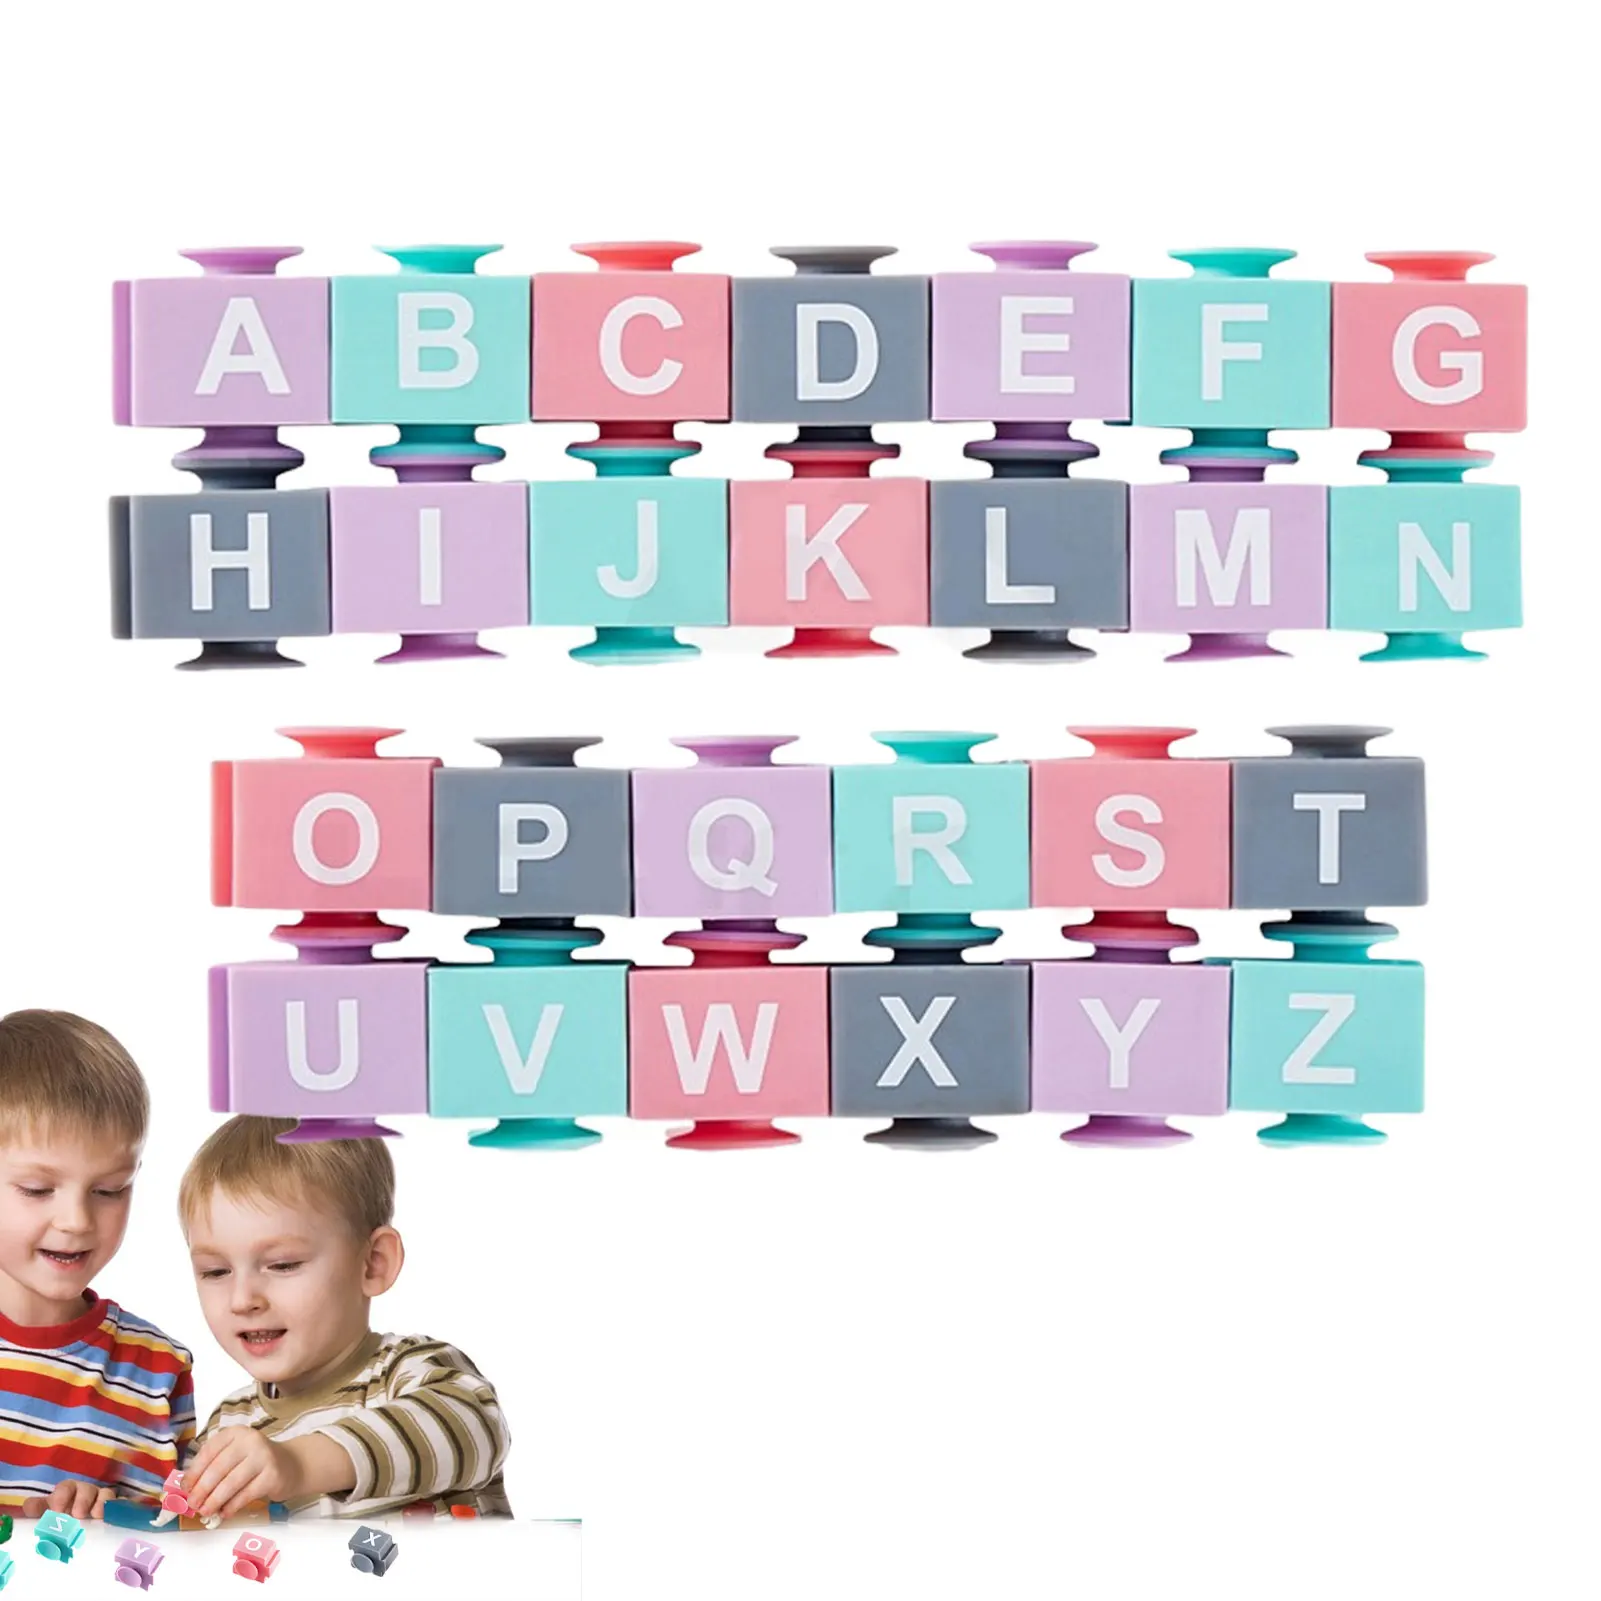 

Мягкие блоки на присоске, строительные блоки для малышей, Обучающие сжимаемые игры с цифрами или буквами в течение 6 месяцев и старше